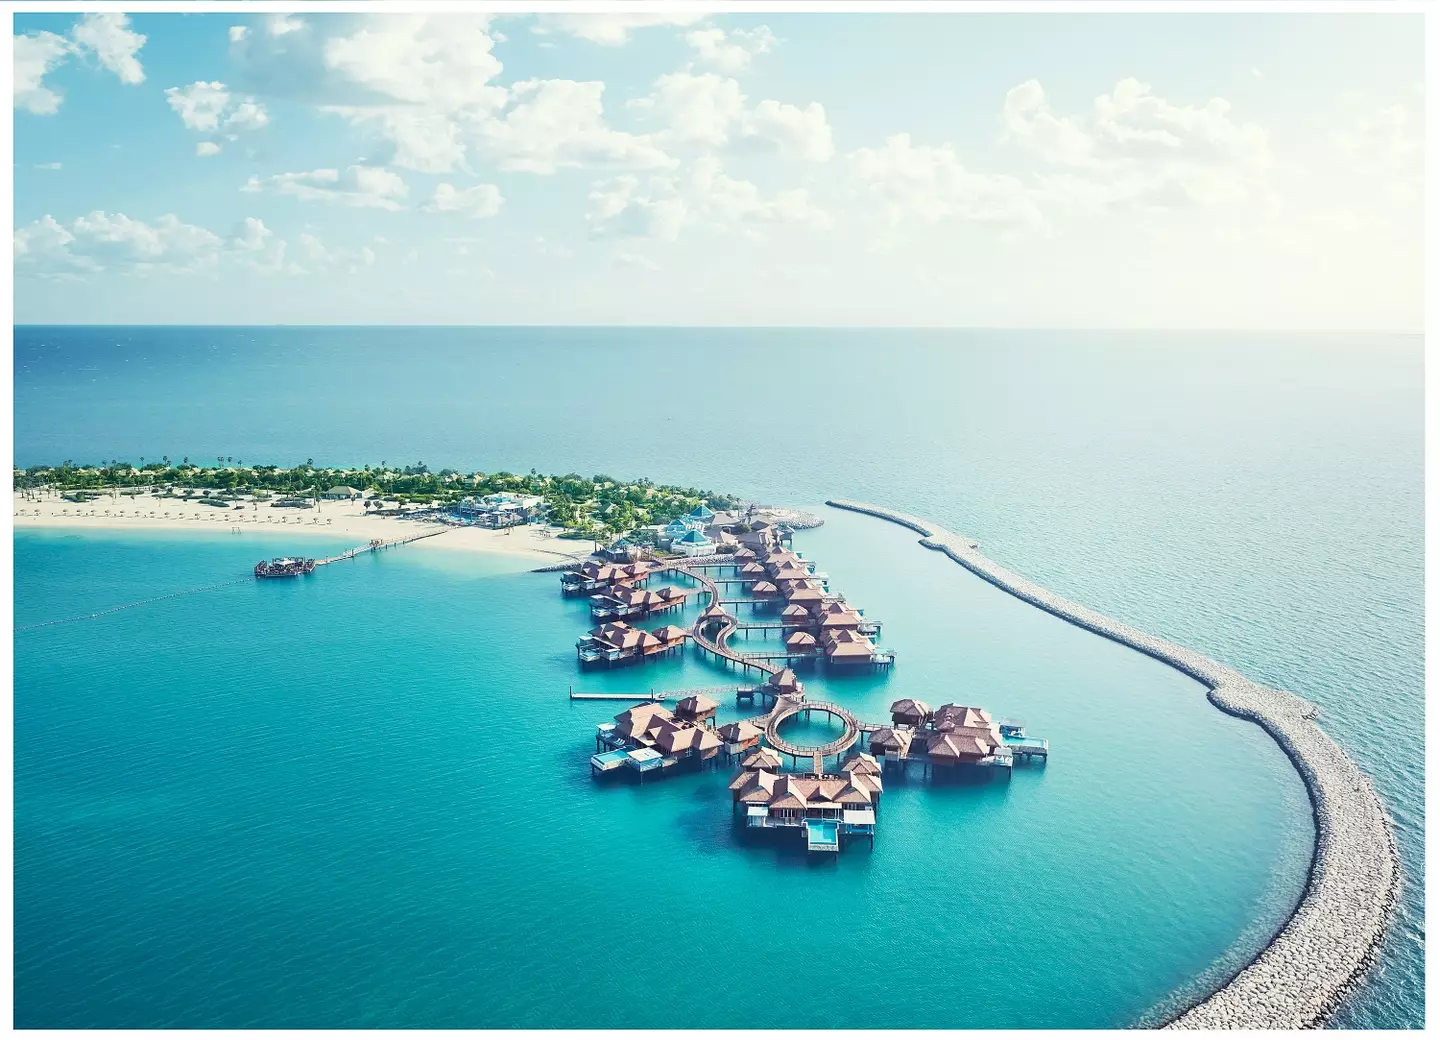 The 'Banana Island' resort in Qatar, where rooms cost around £3,500 per night.